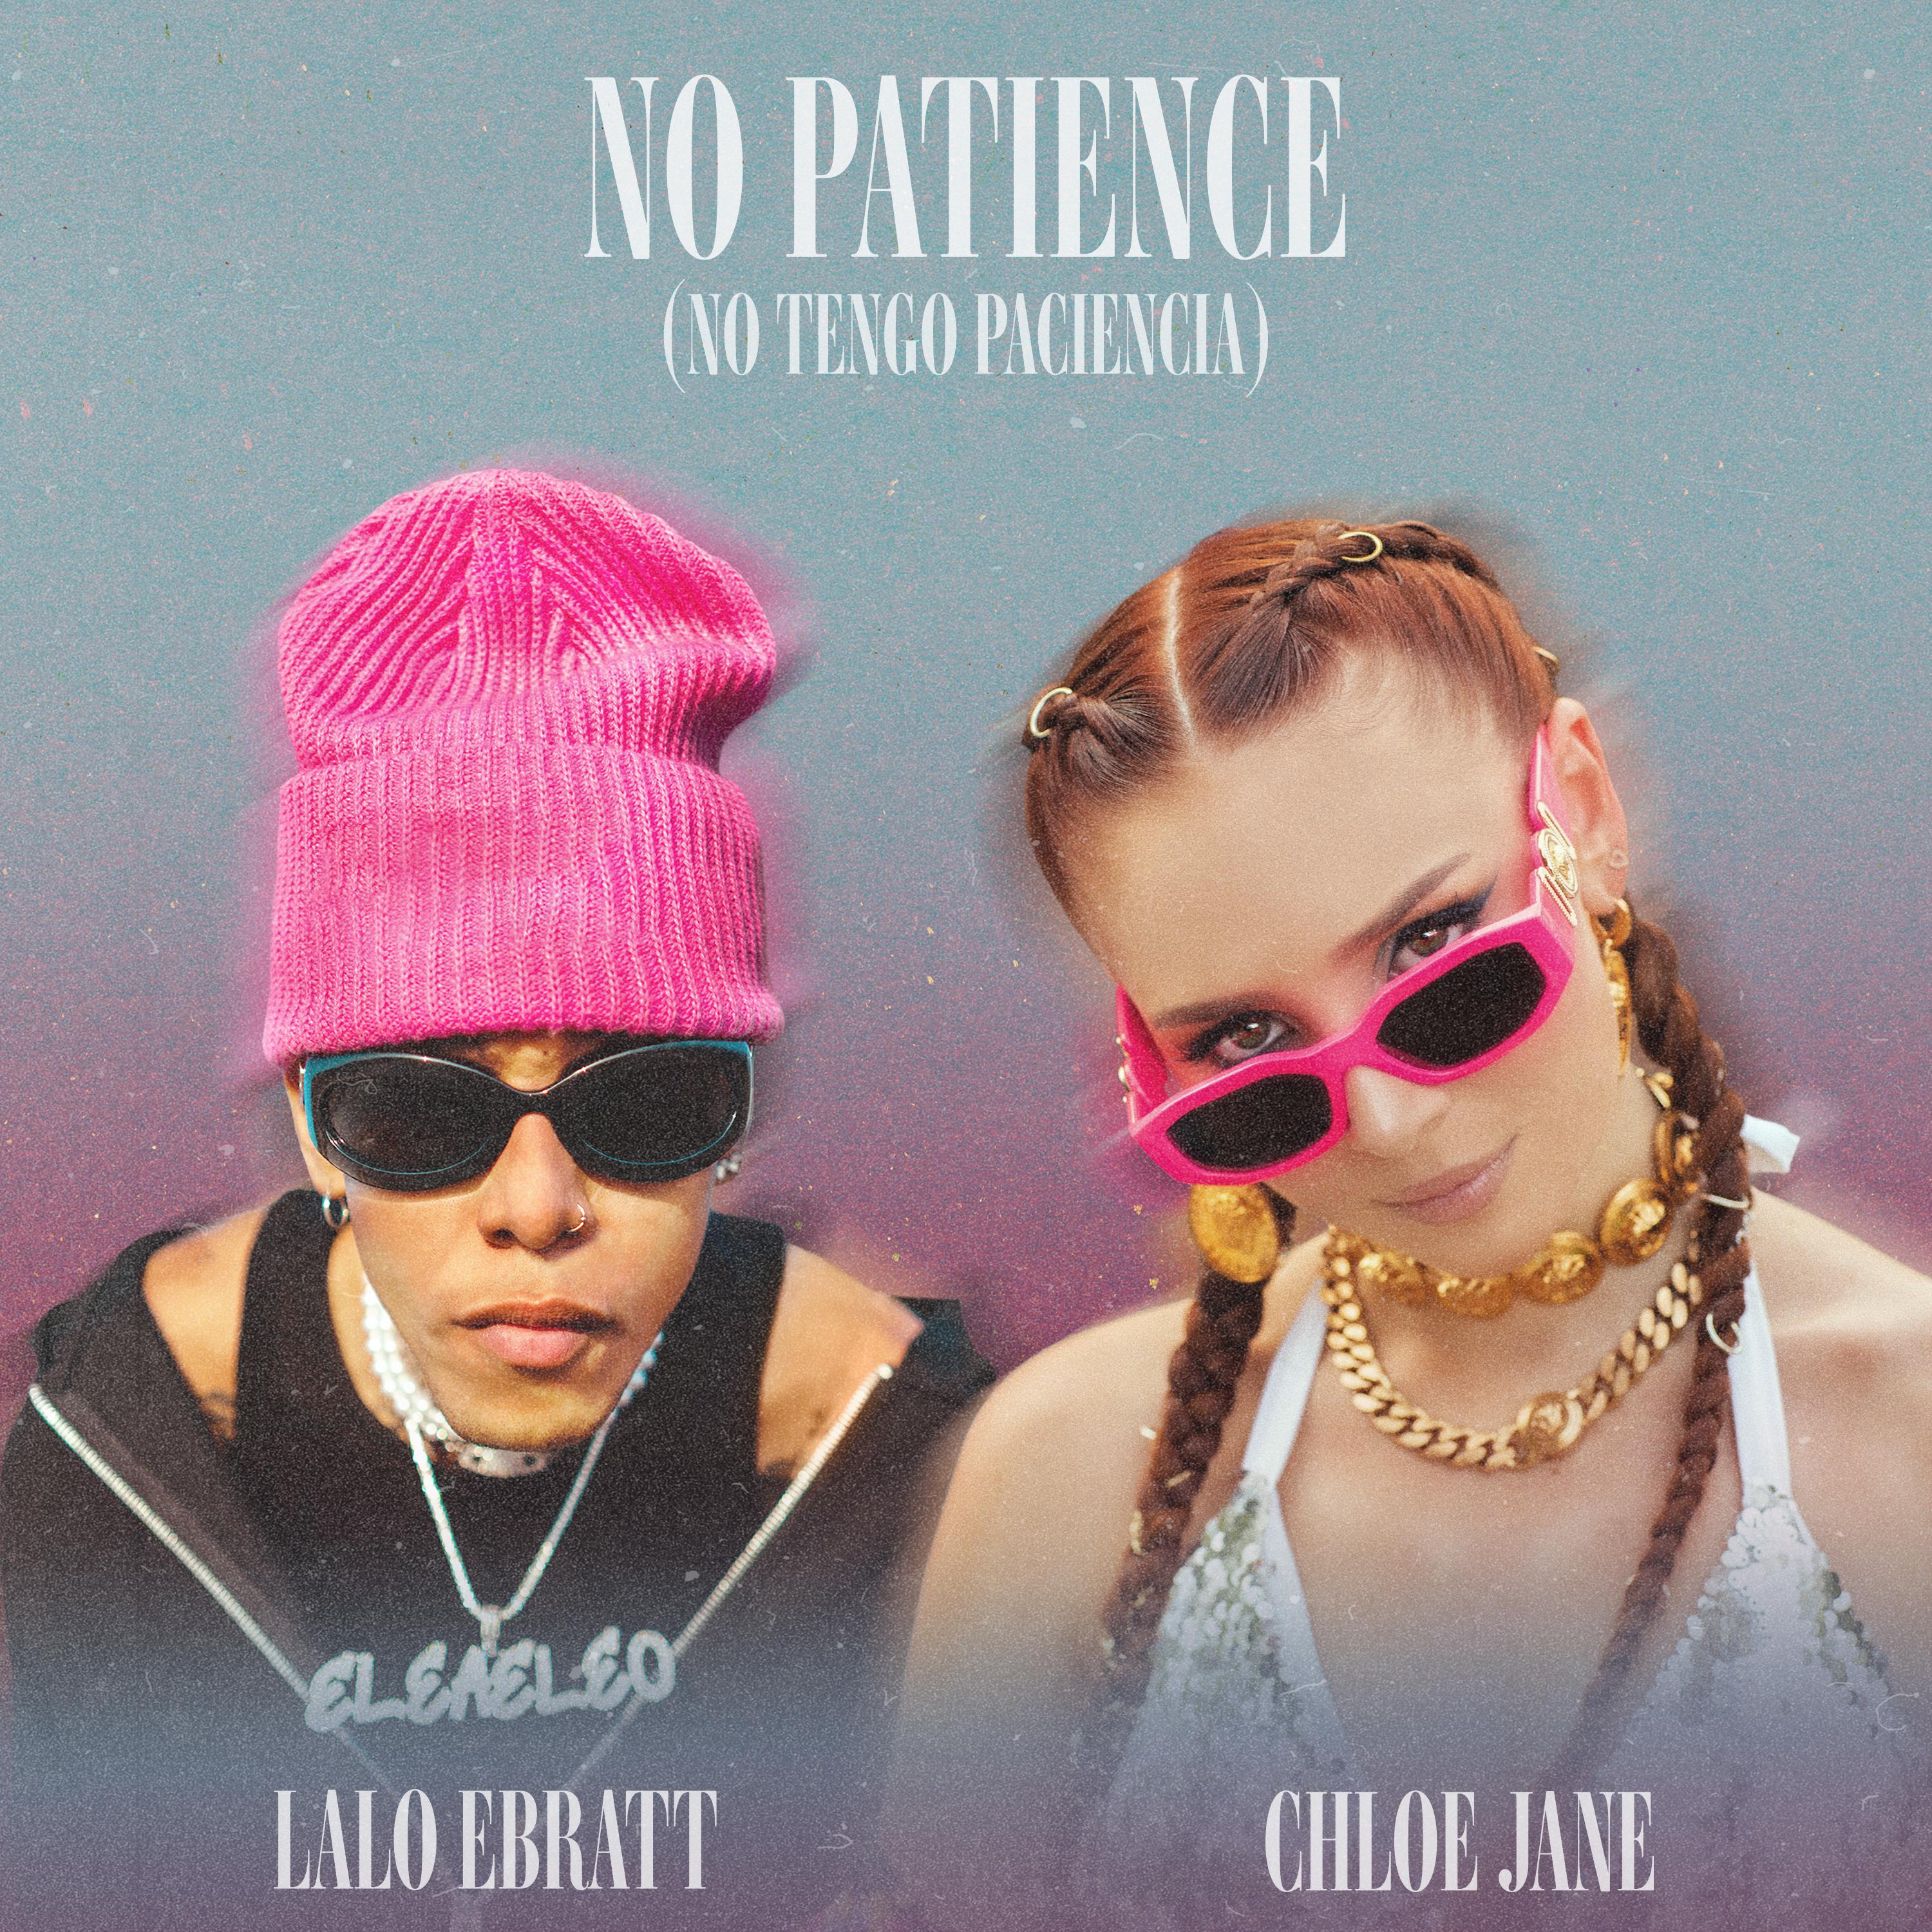 Chloe Jane - No Patience (No Tengo Paciencia)